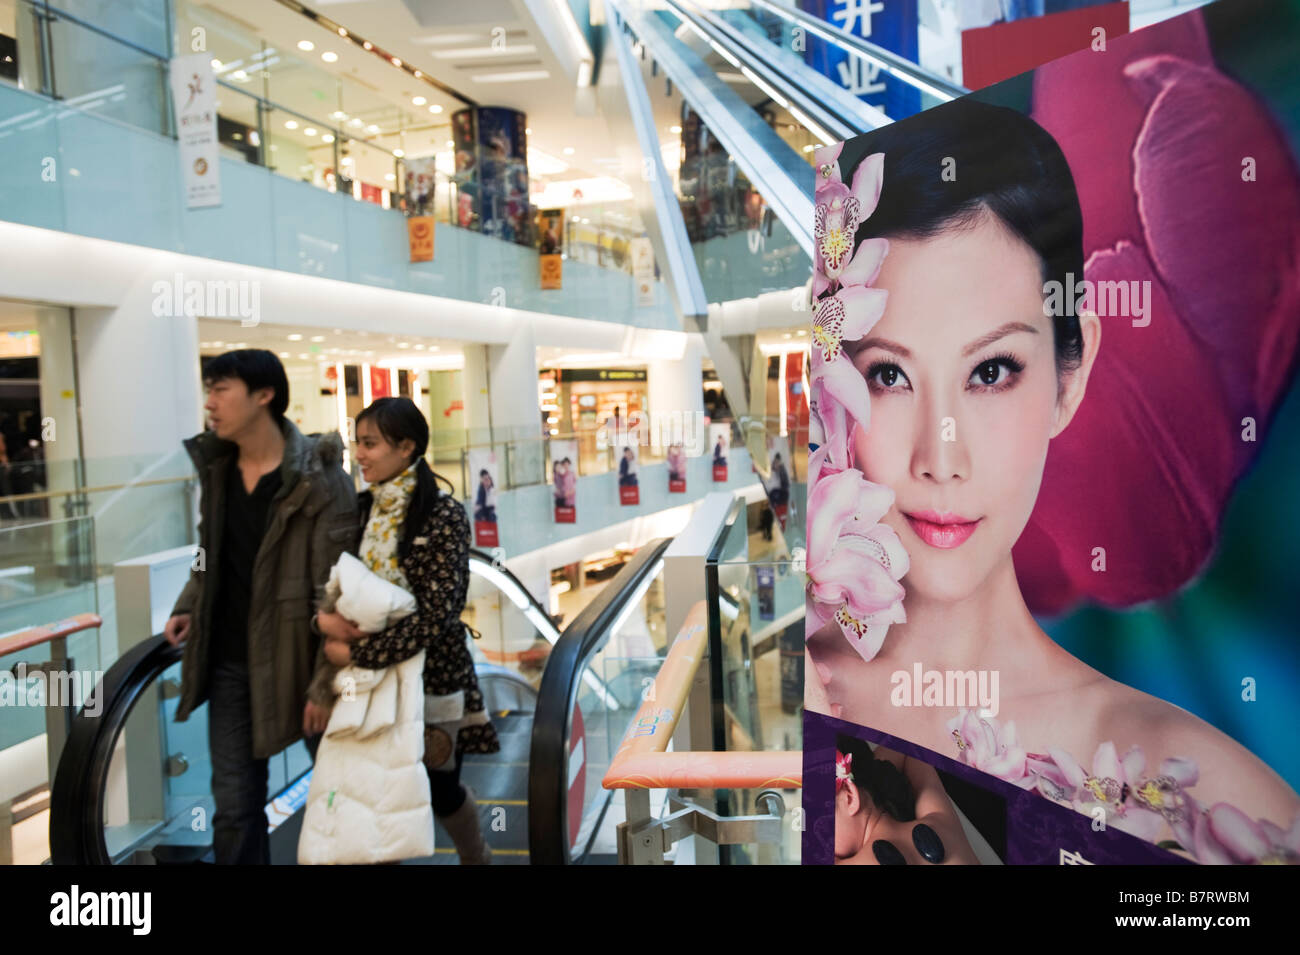 Pubblicità affissioni poster interno moderno centro commerciale a Pechino Cina 2009 Foto Stock